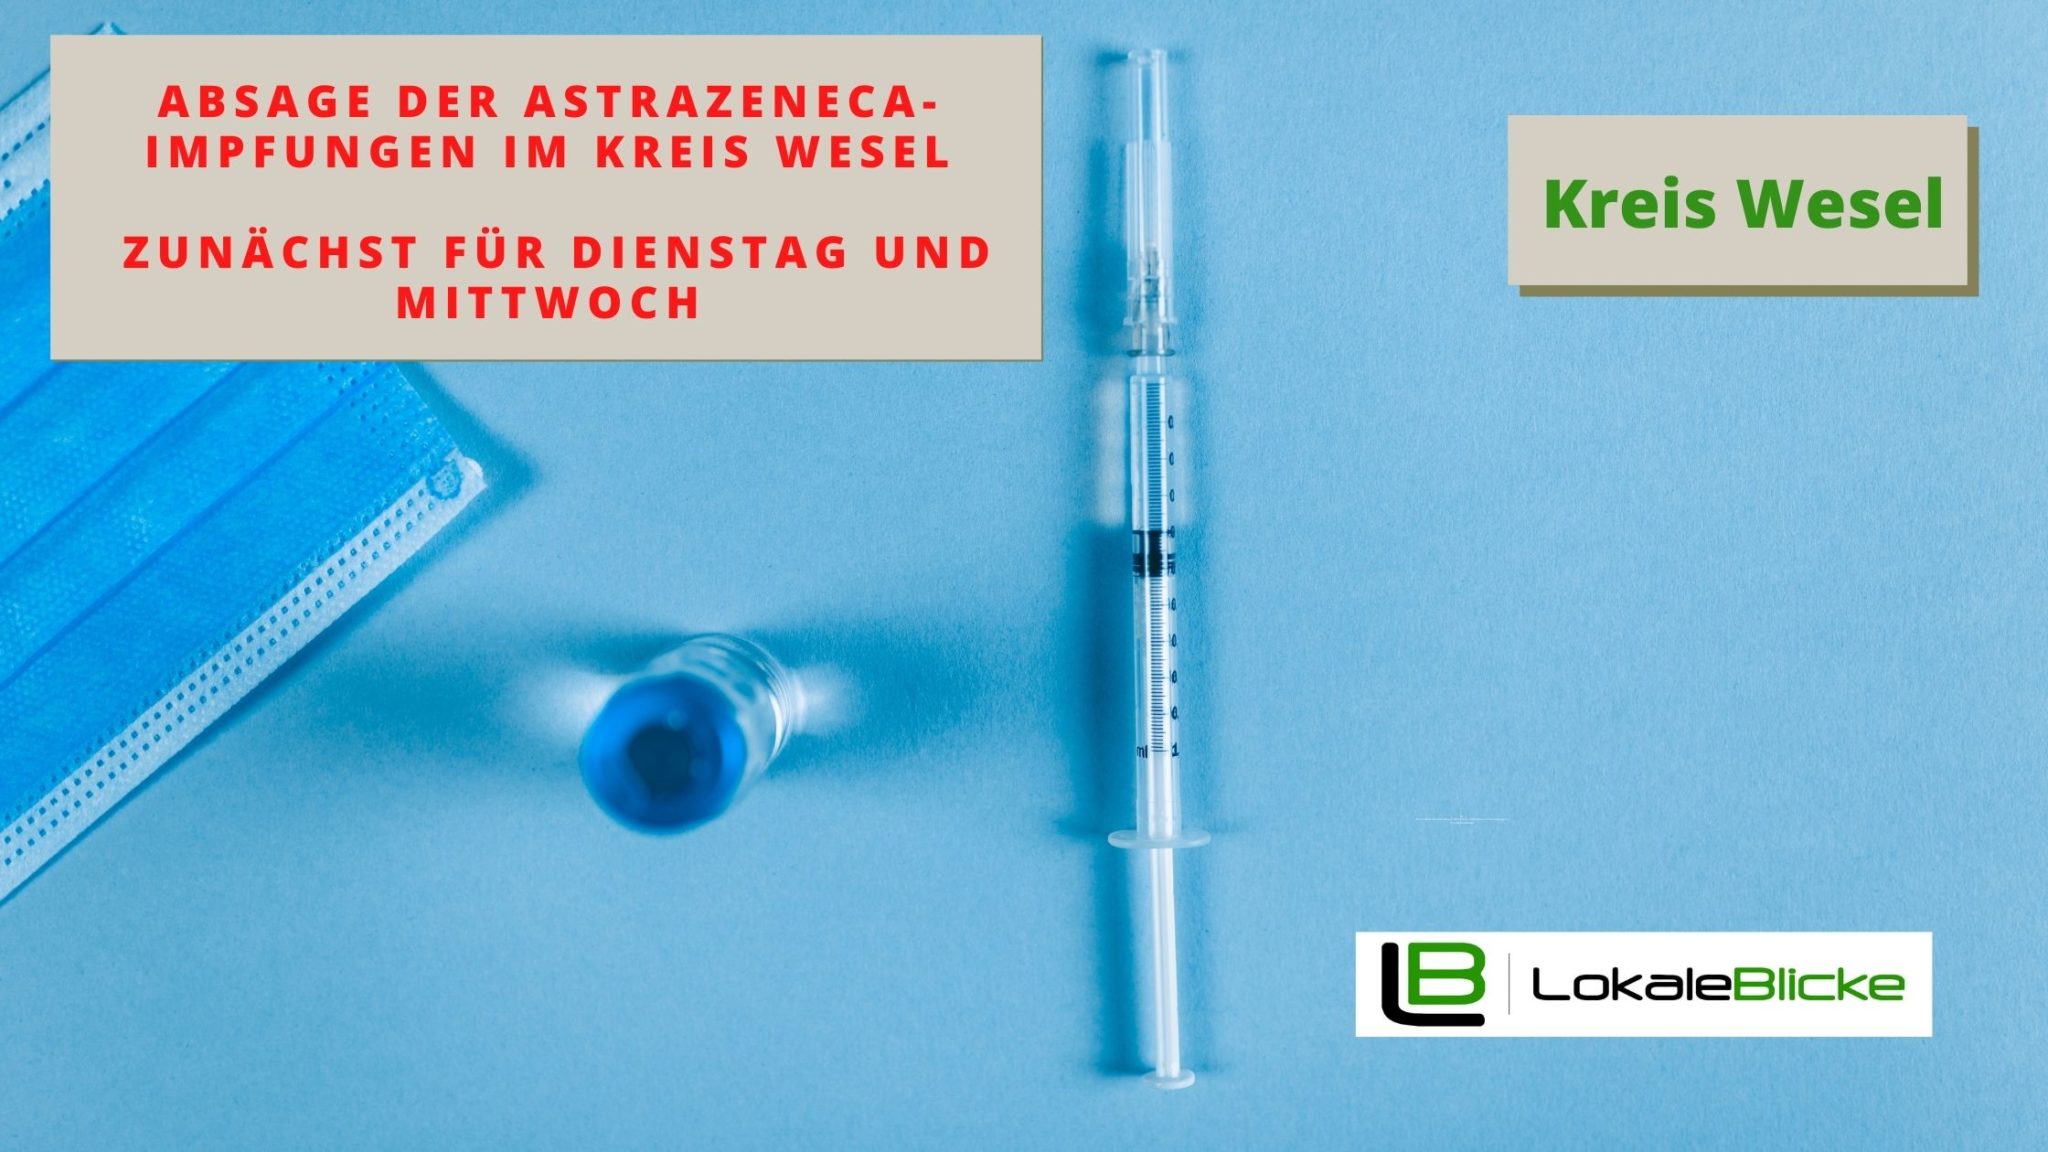 Absage der AstraZeneca-Impfungen im Kreis Wesel zunächst für Dienstag und Mittwoch